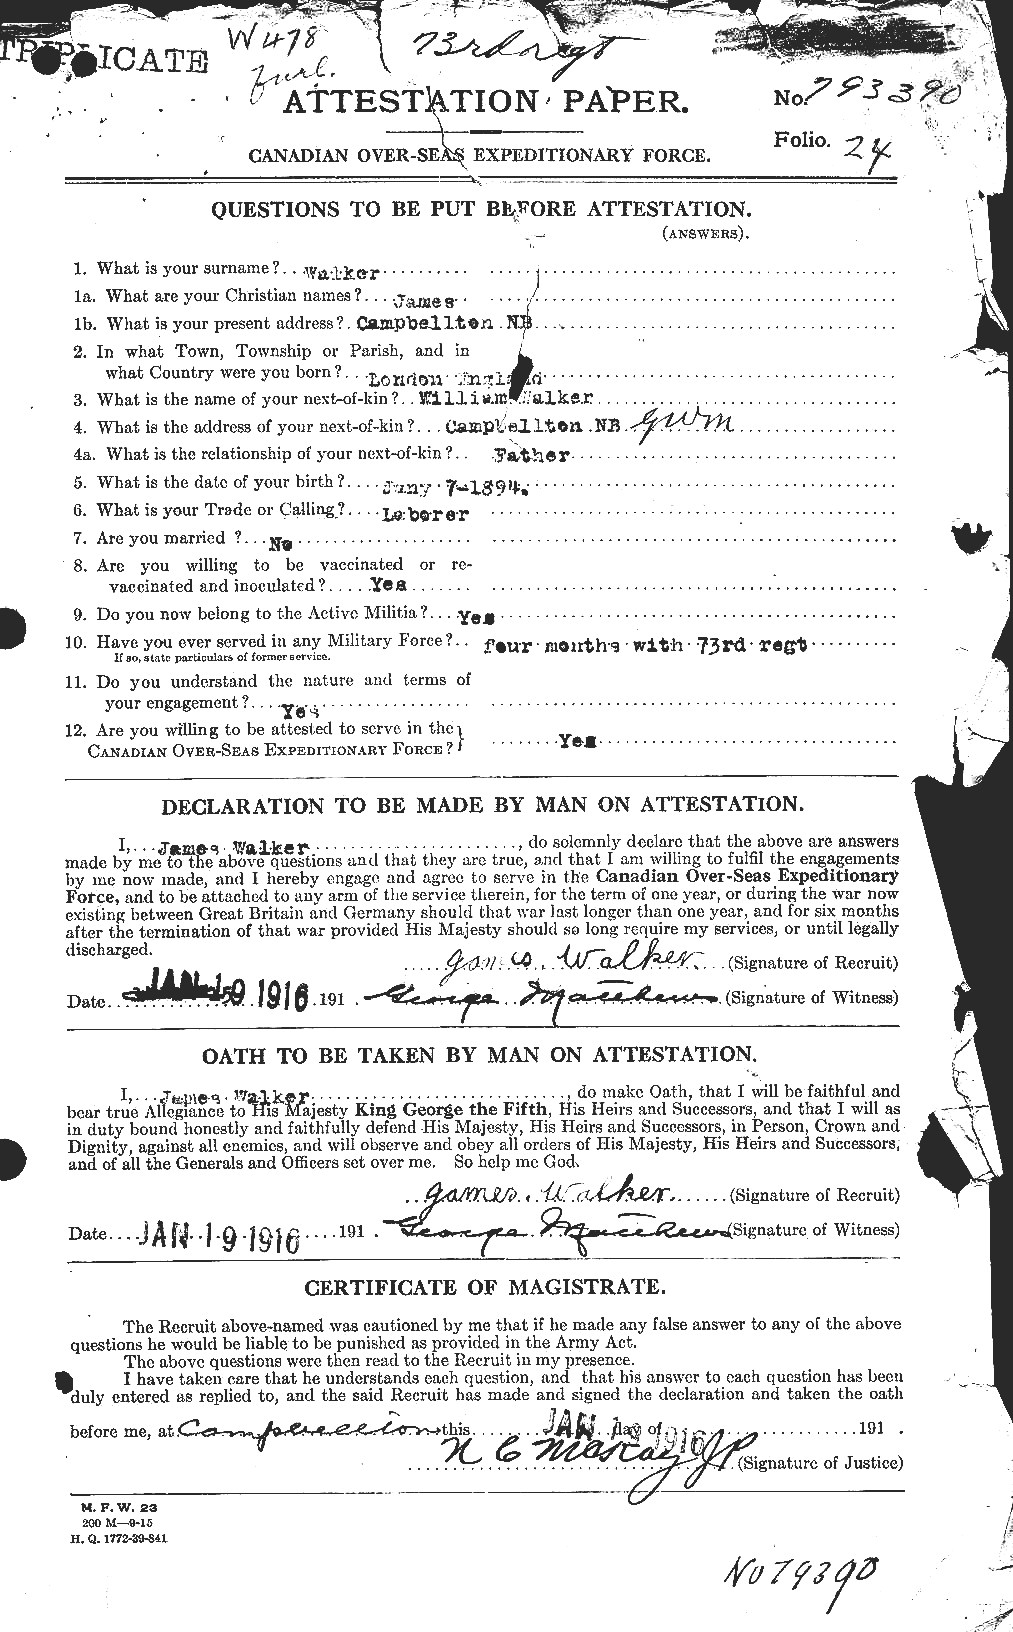 Dossiers du Personnel de la Première Guerre mondiale - CEC 652947a